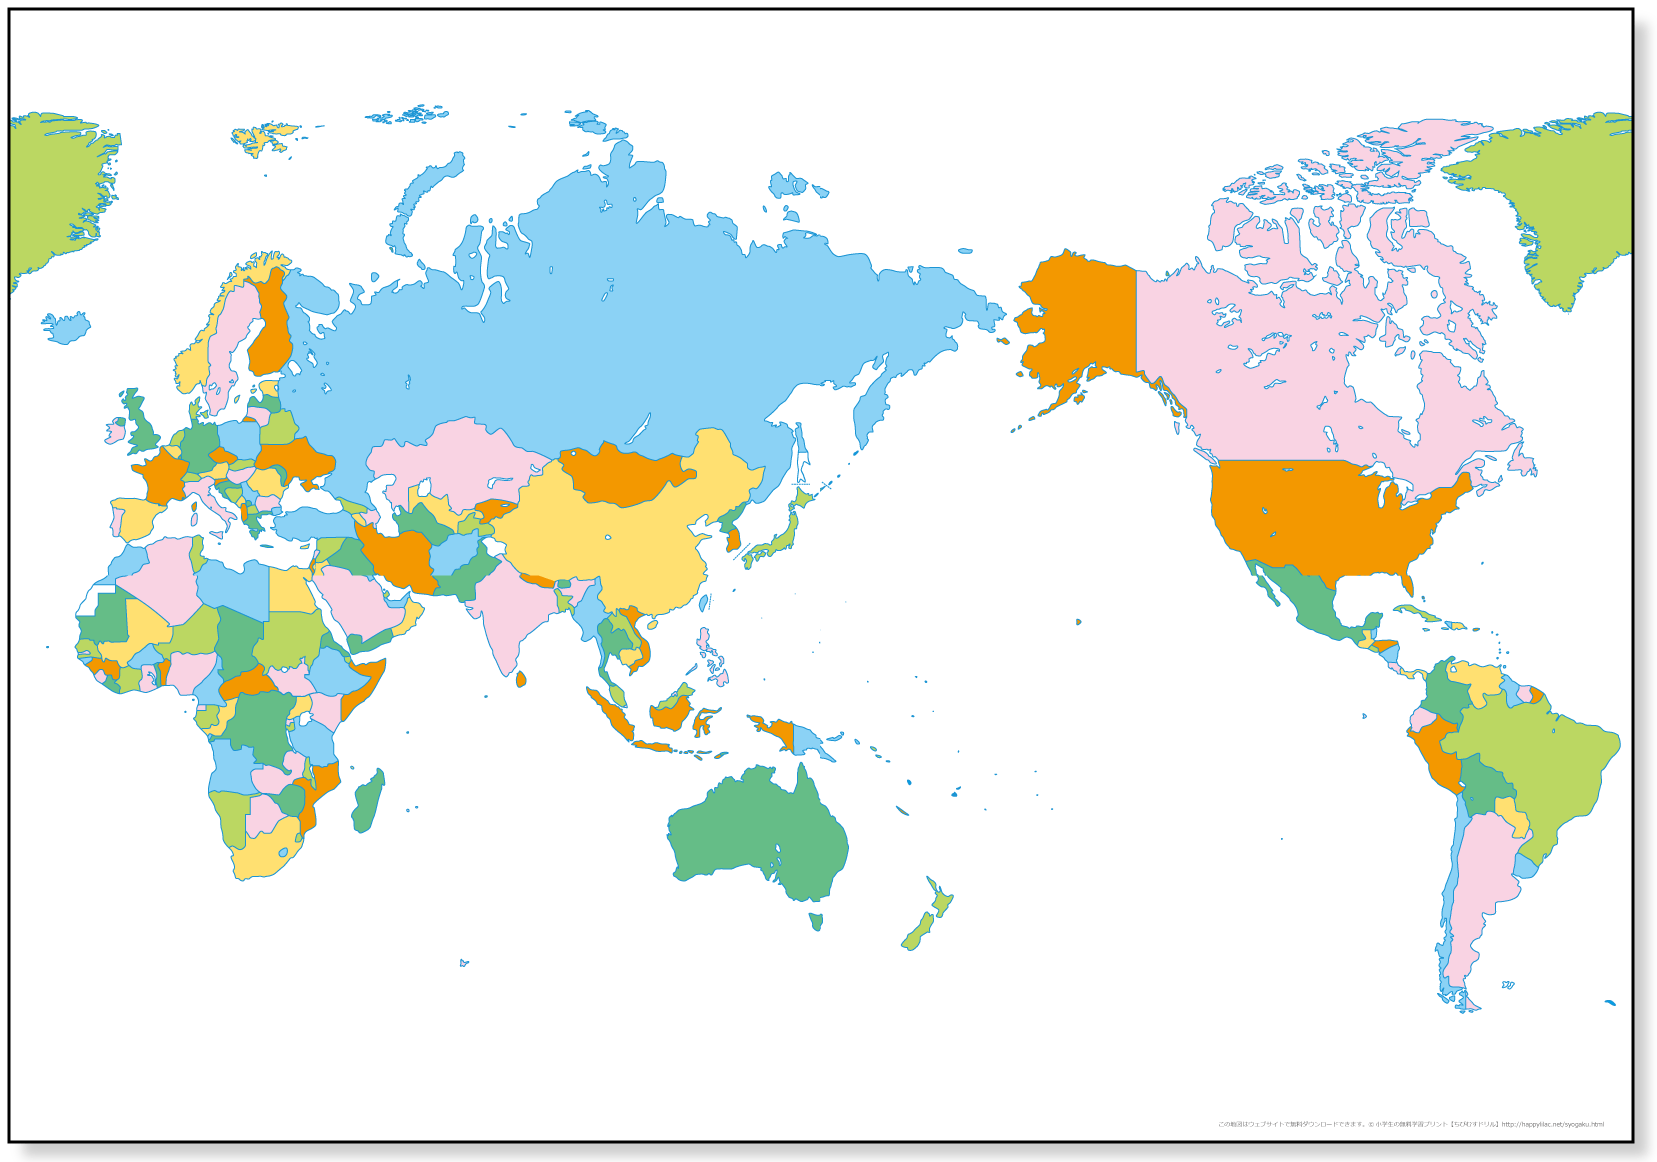 子ども用 世界地図 カラー 国境線のみ 無料ダウンロード 印刷 ちびむすドリル 小学生